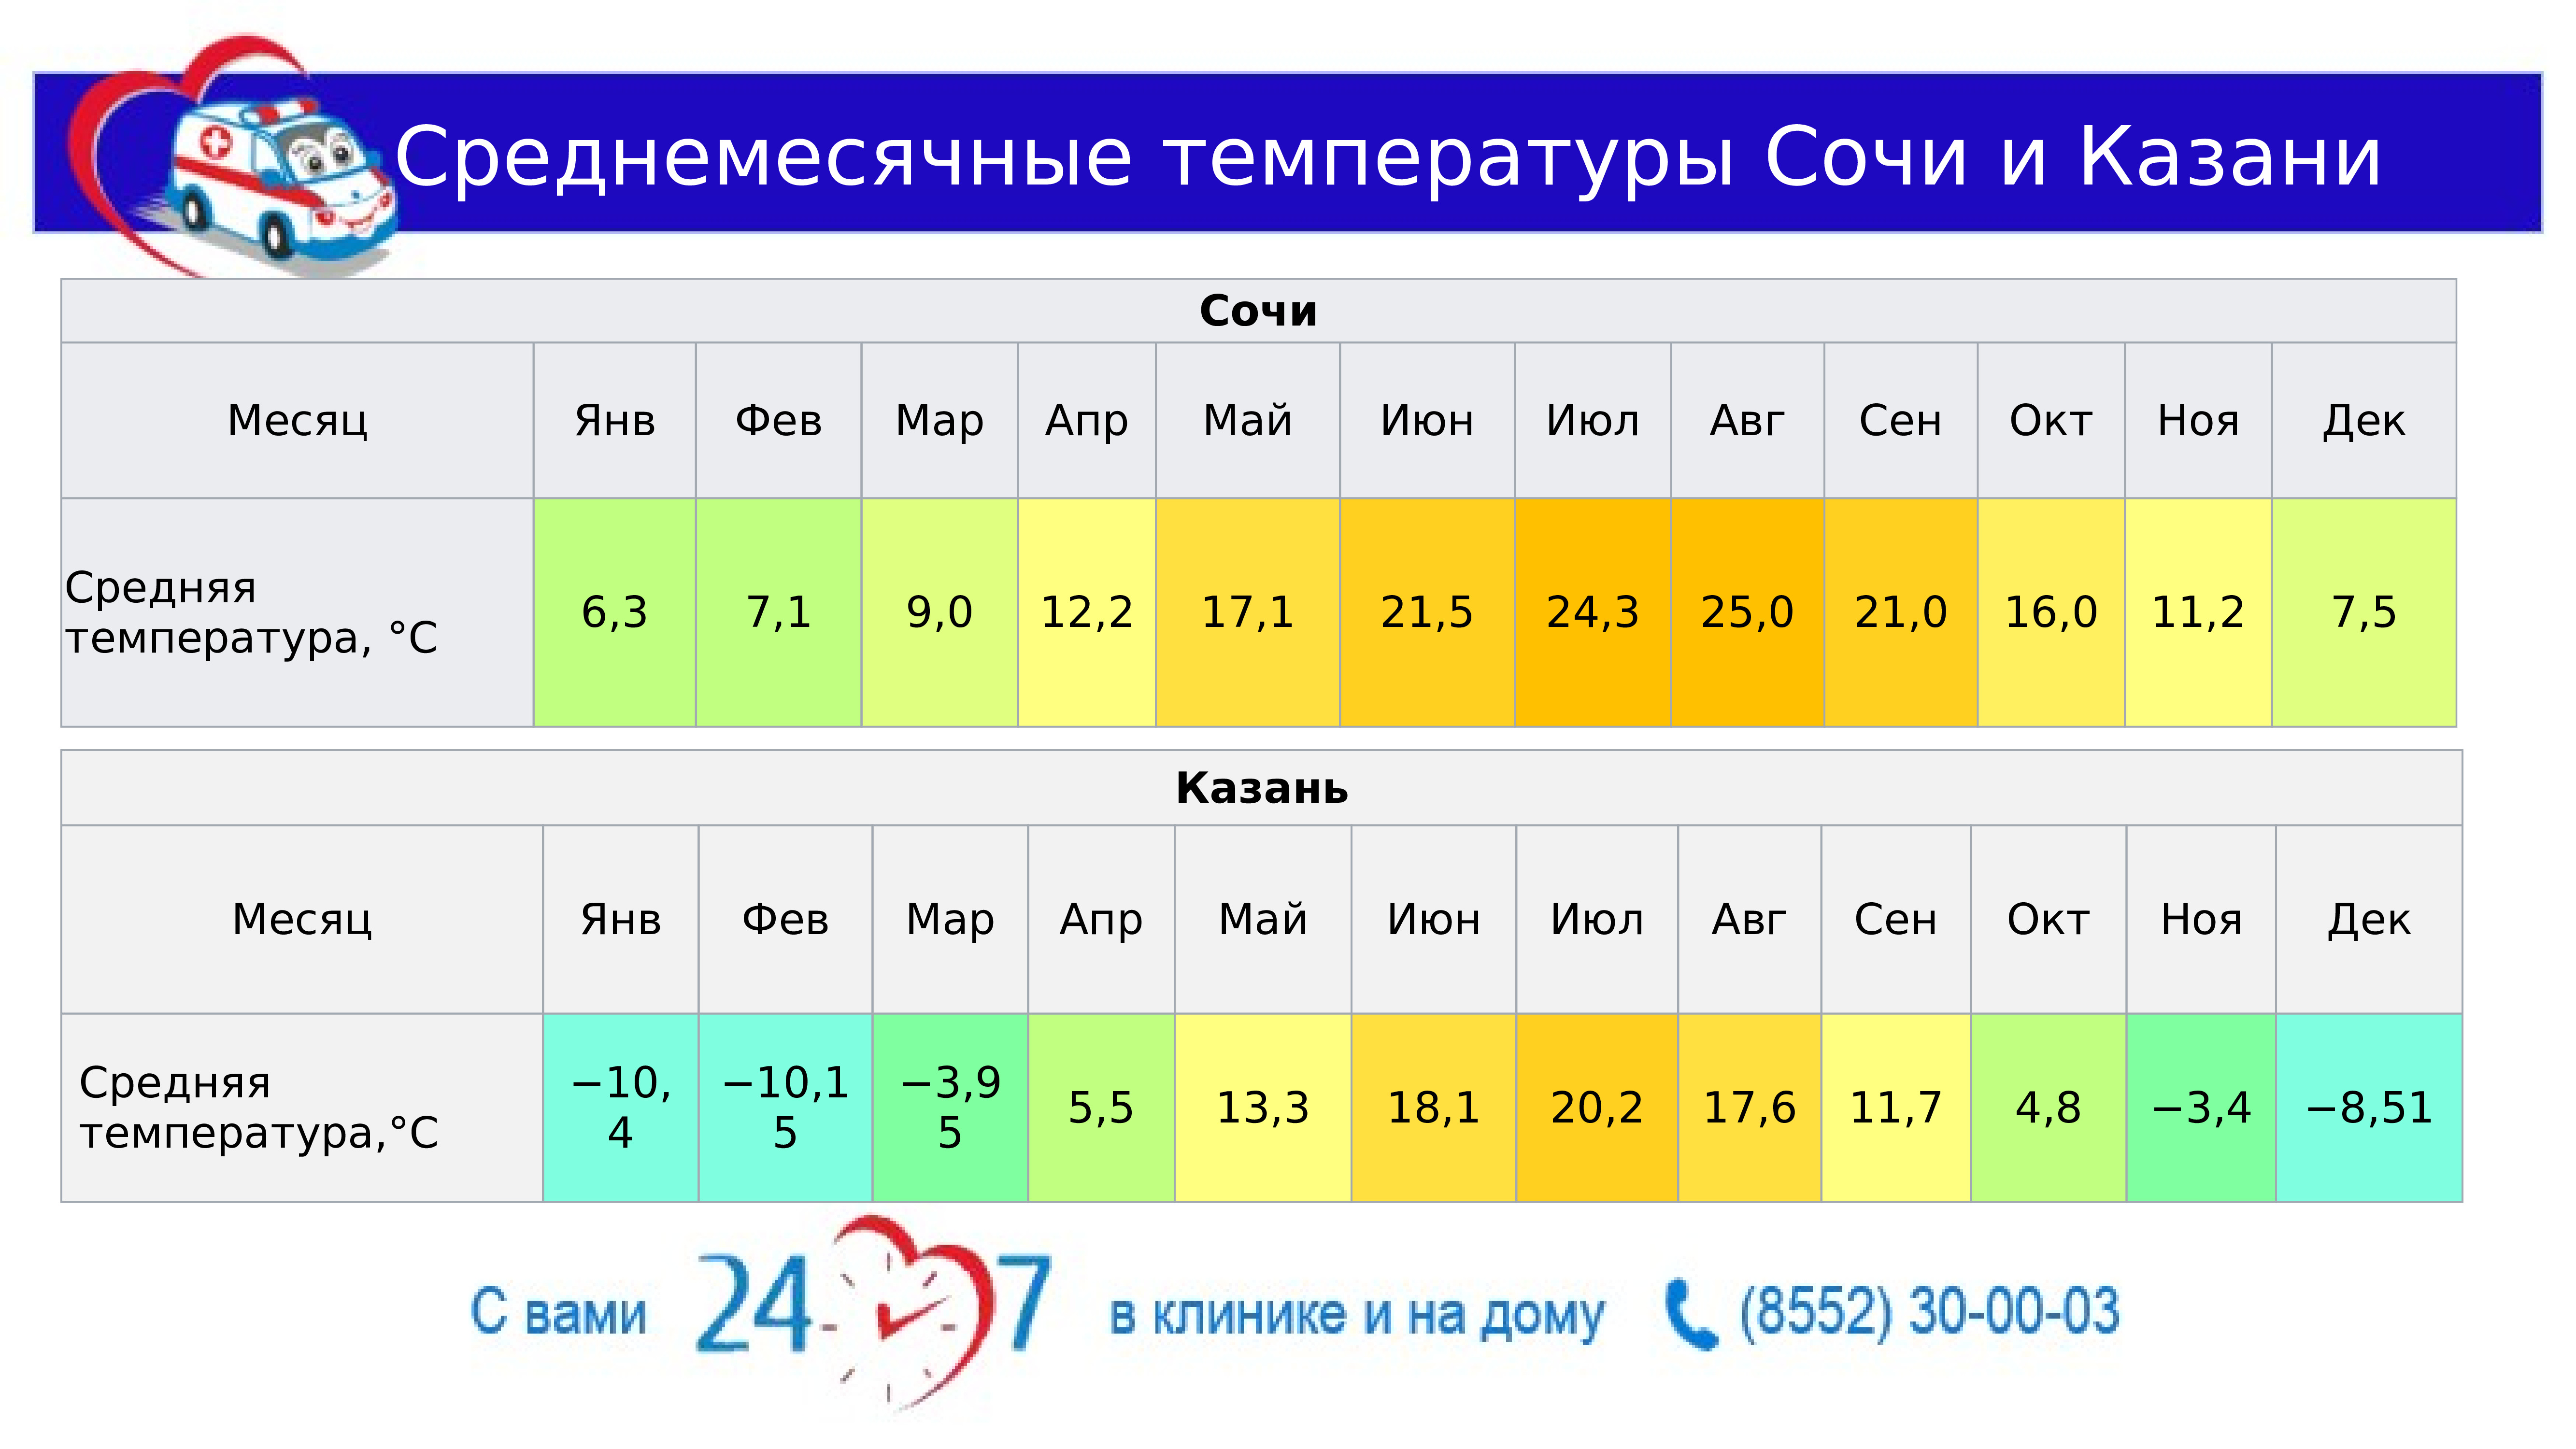 Температура воздуха в июле в краснодаре. Средняя температура в Сочи. Средняя температура в Казани. Средняя температура в Сочи по месяцам. Средняя температура в Казани по месяцам.